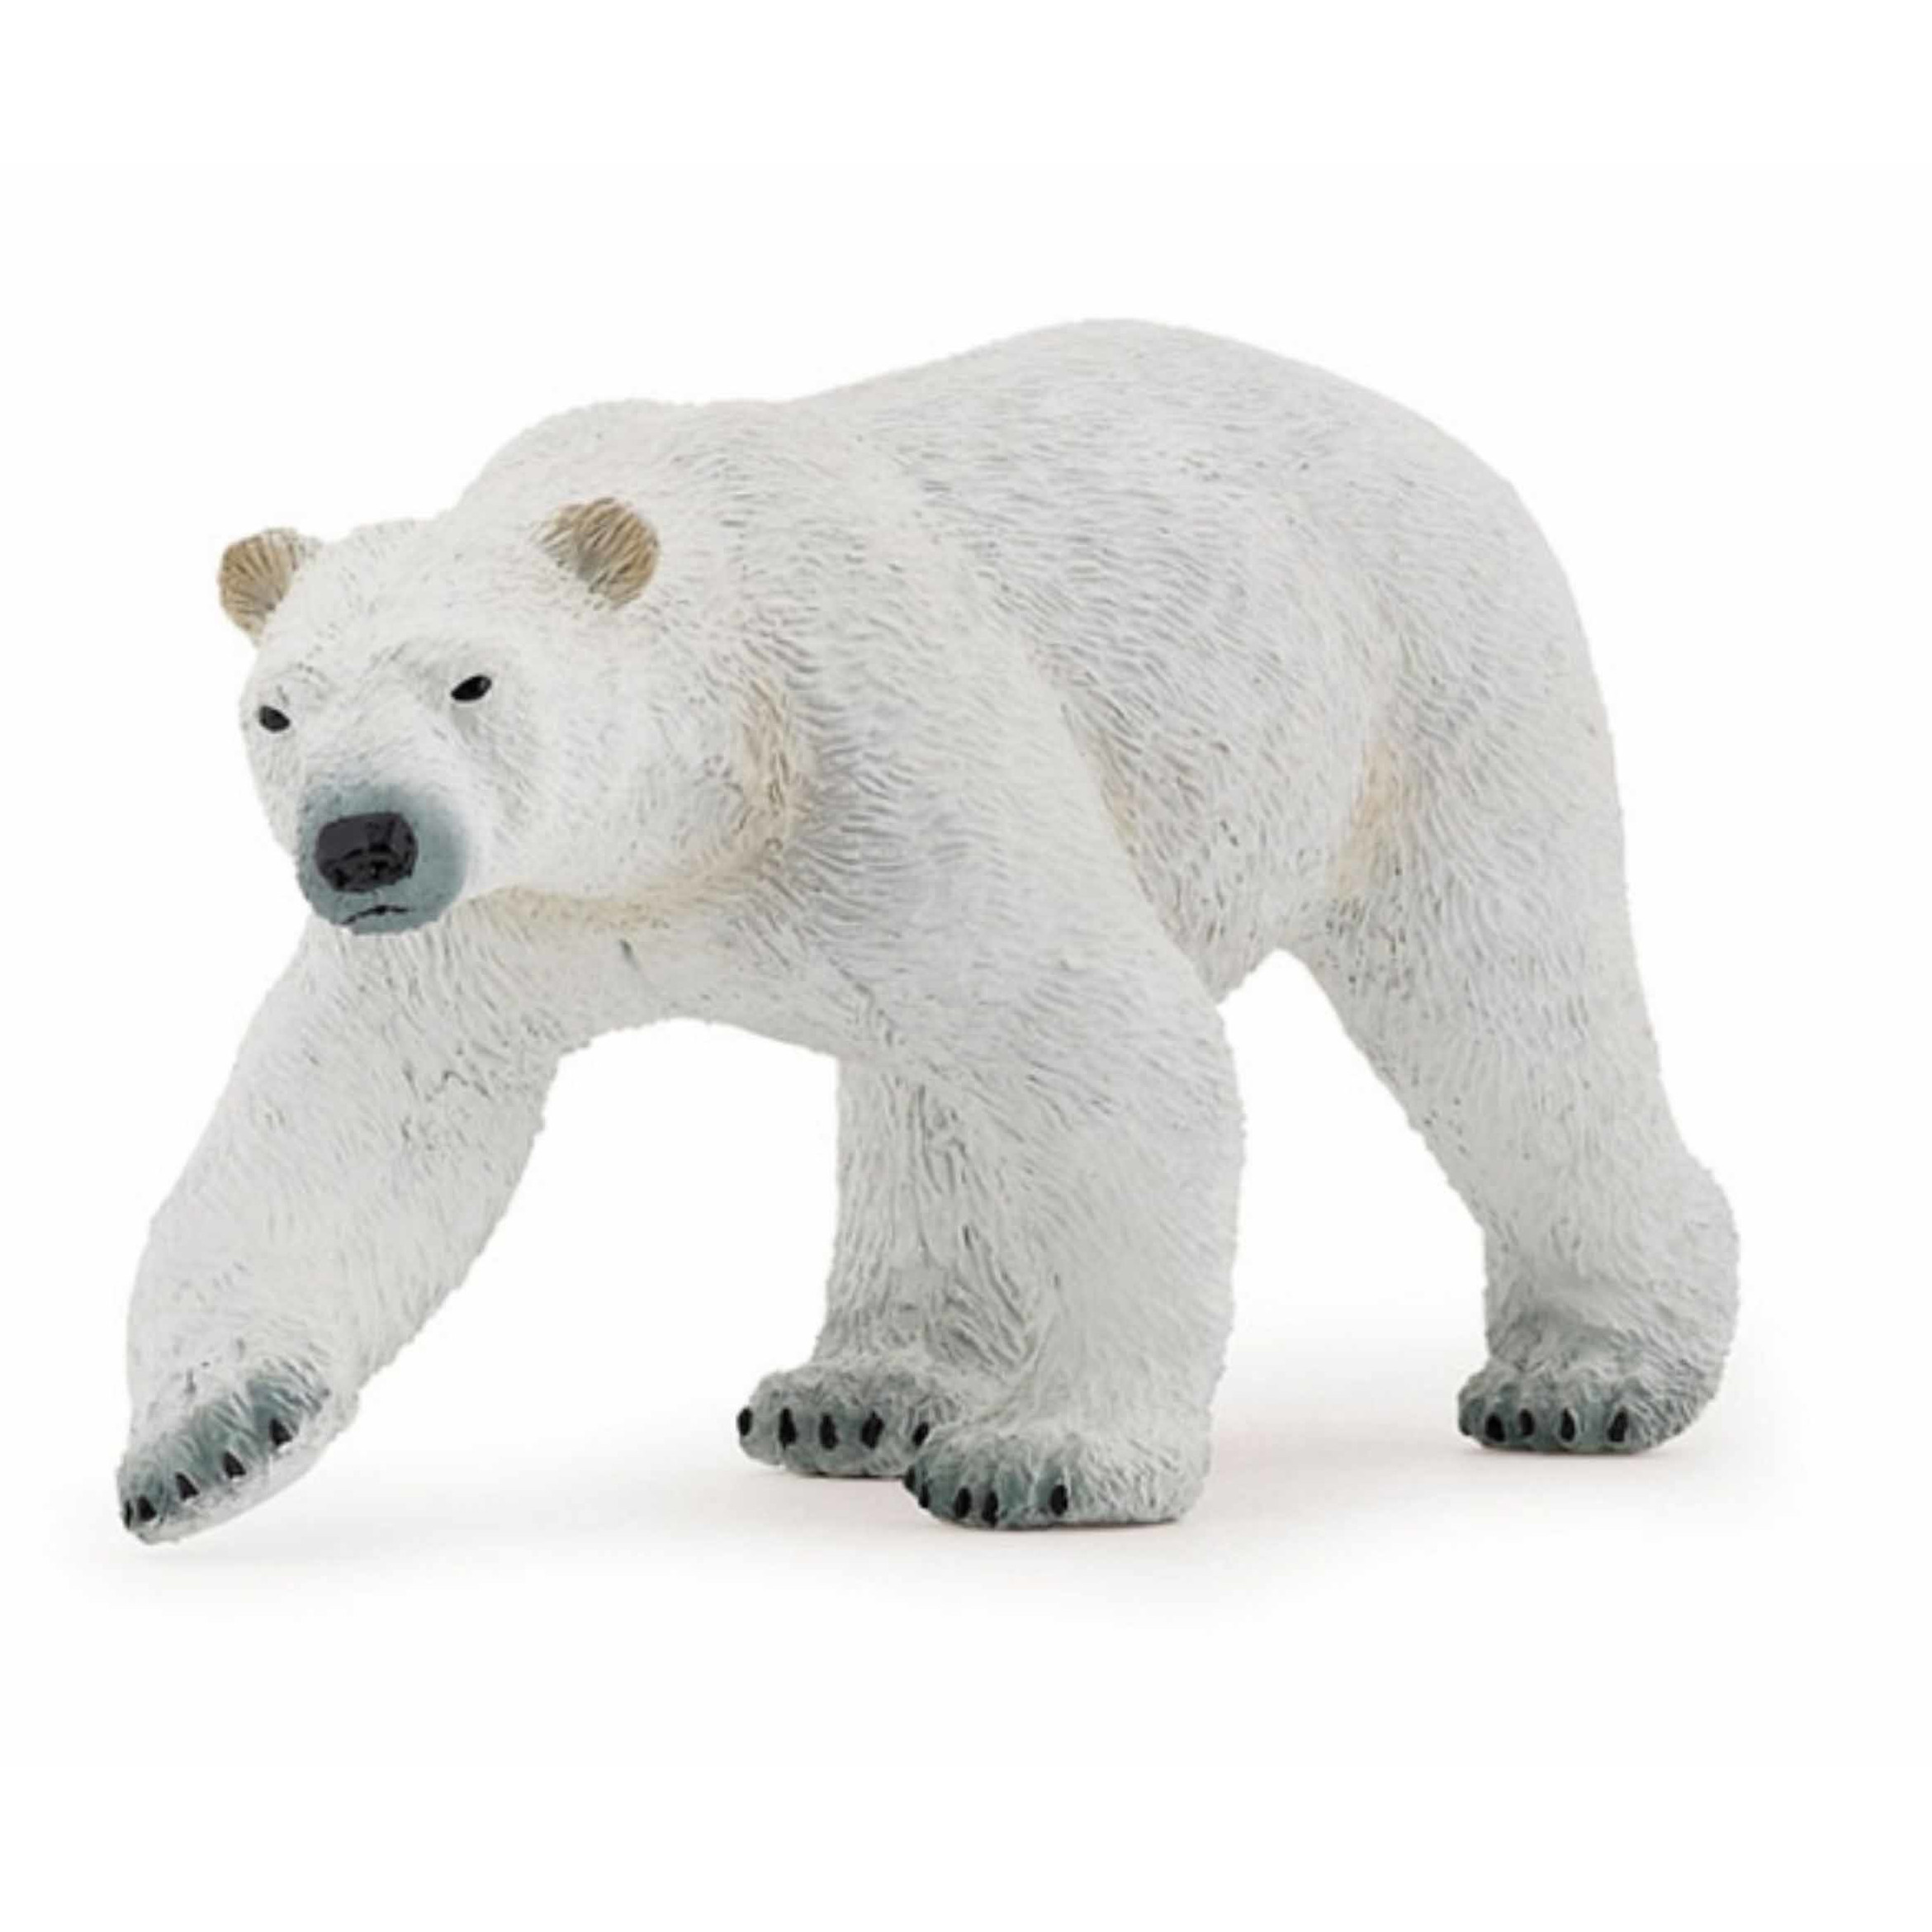 Plastic speelgoed figuur ijsbeer 14 cm